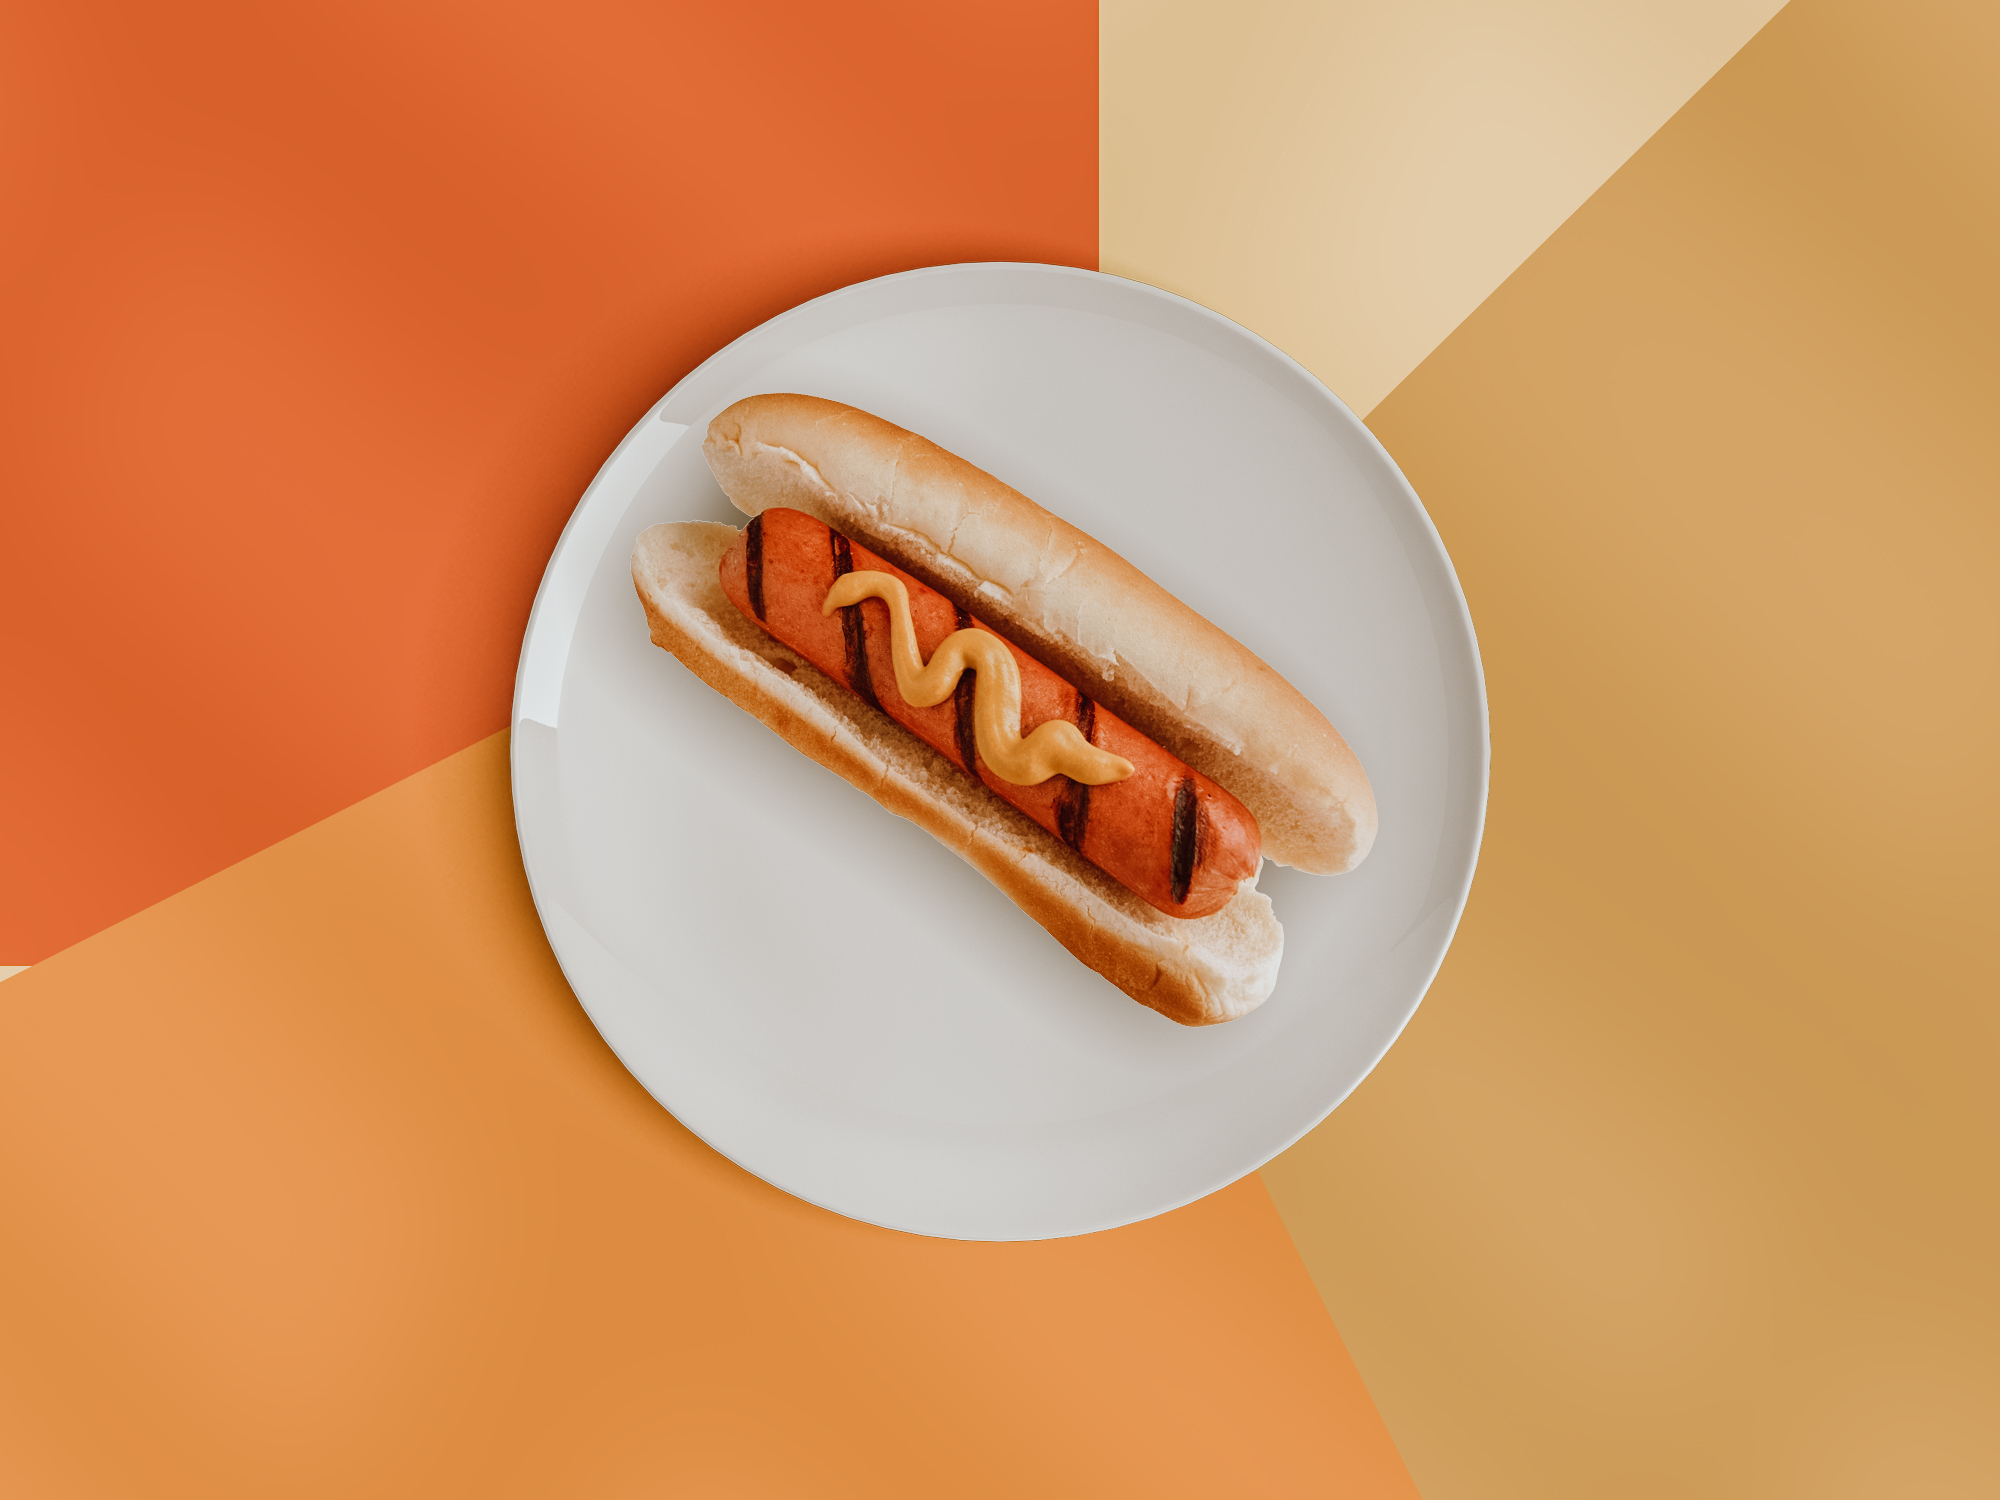 Ähnlich wie Pommes enthalten auch Hot Dogs Konservierungsstoffe, die die Haut austrocknen